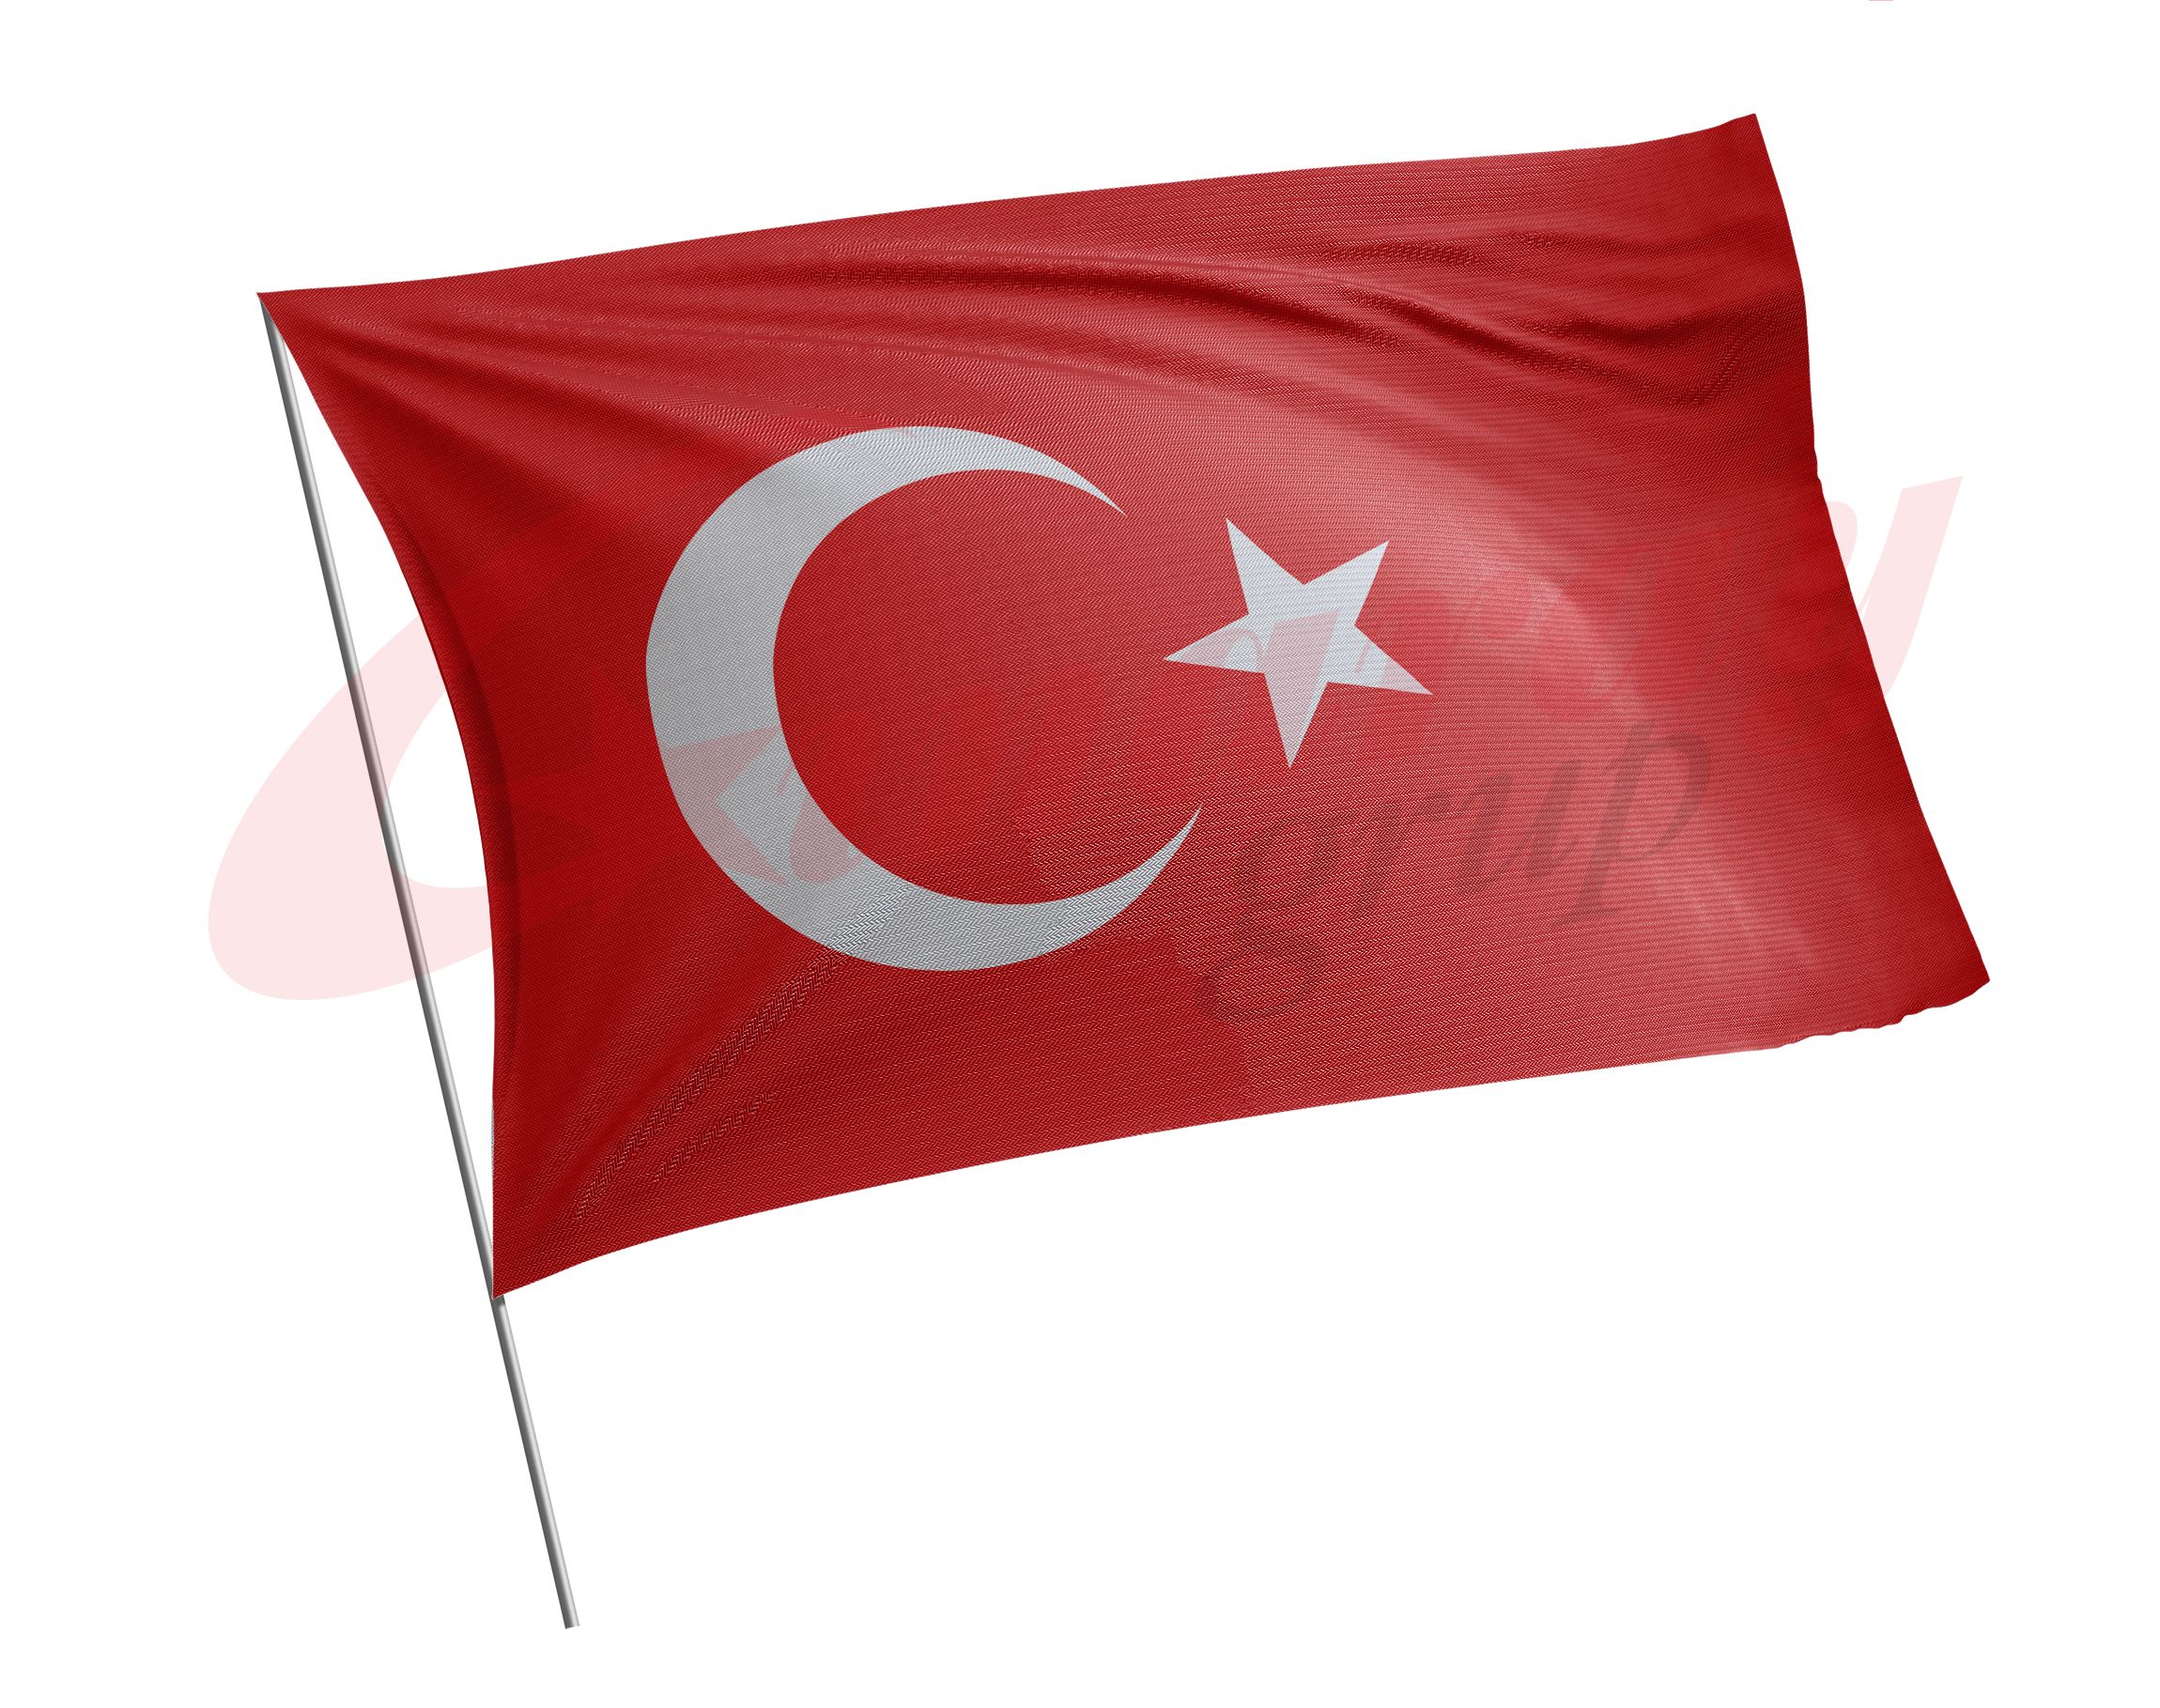 Türk Bayrağı 1200x1800 cm